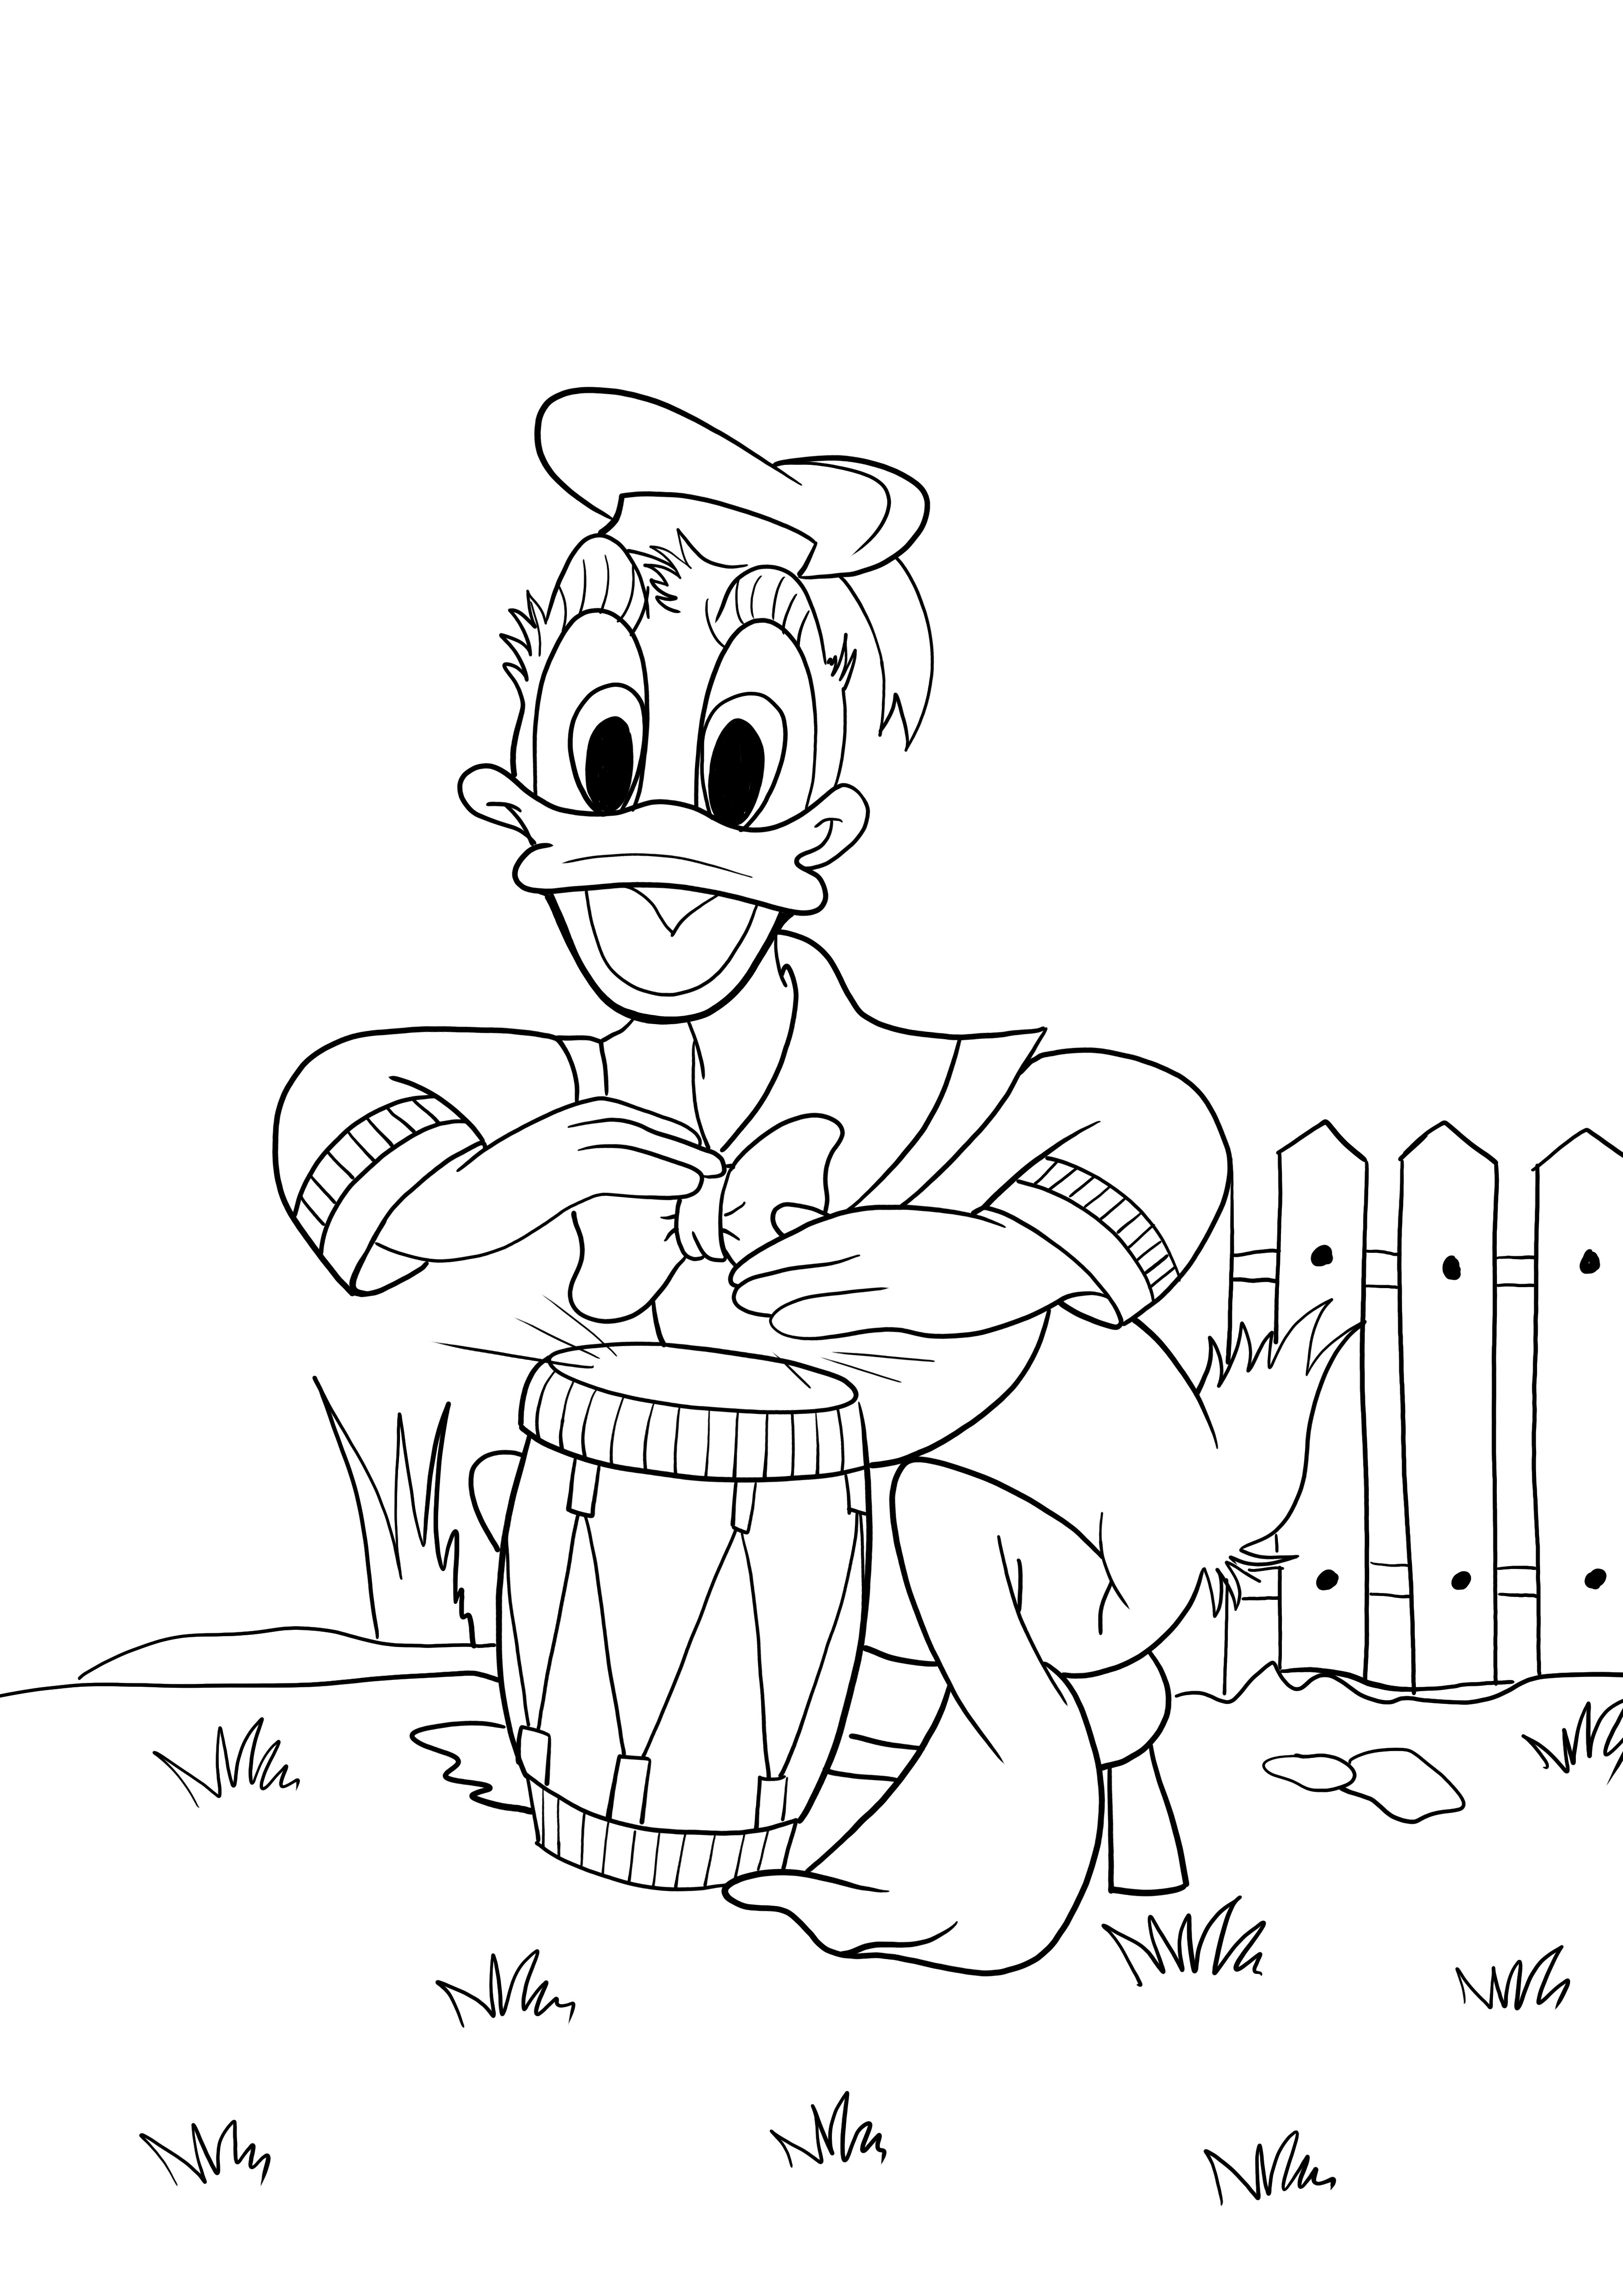 Donald memainkan lembaran drum untuk diwarnai dan dicetak secara gratis